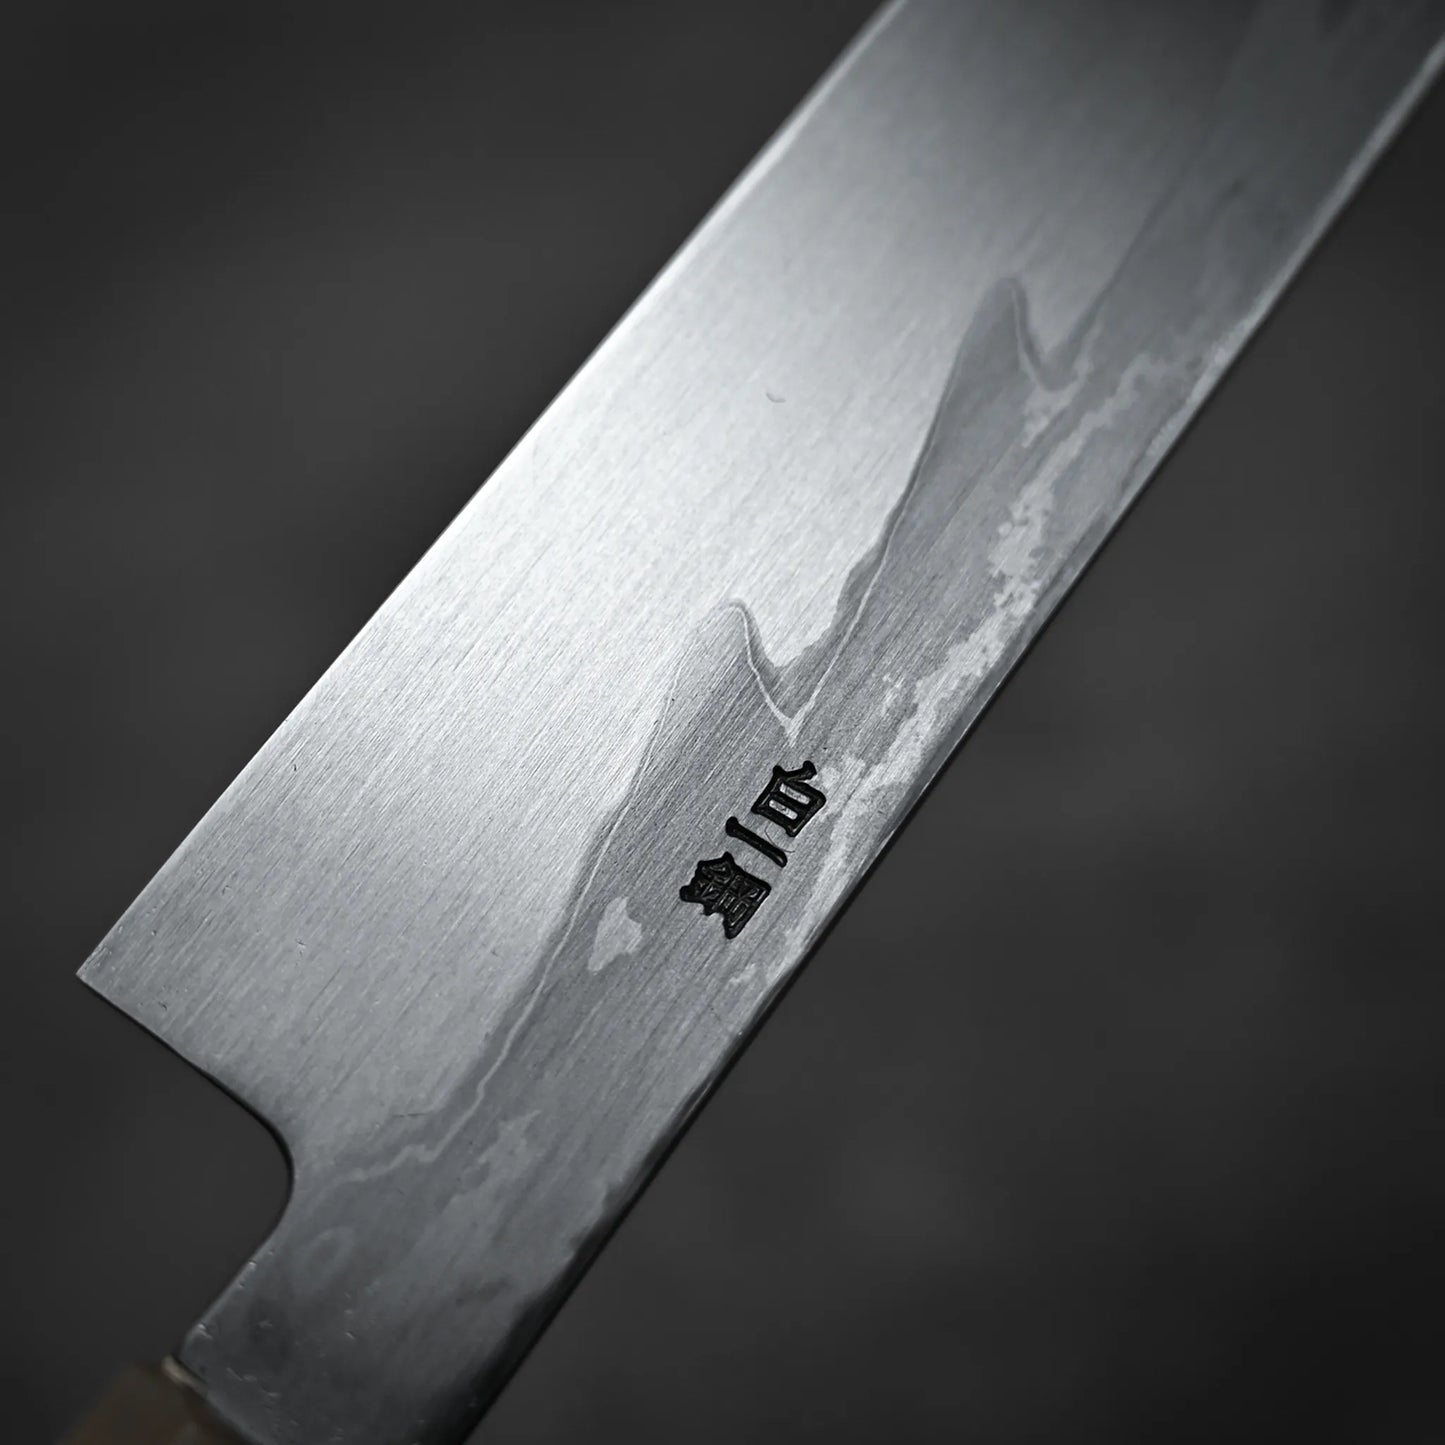 Nakagawa shirogami#1 damascus yanagiba 300mm